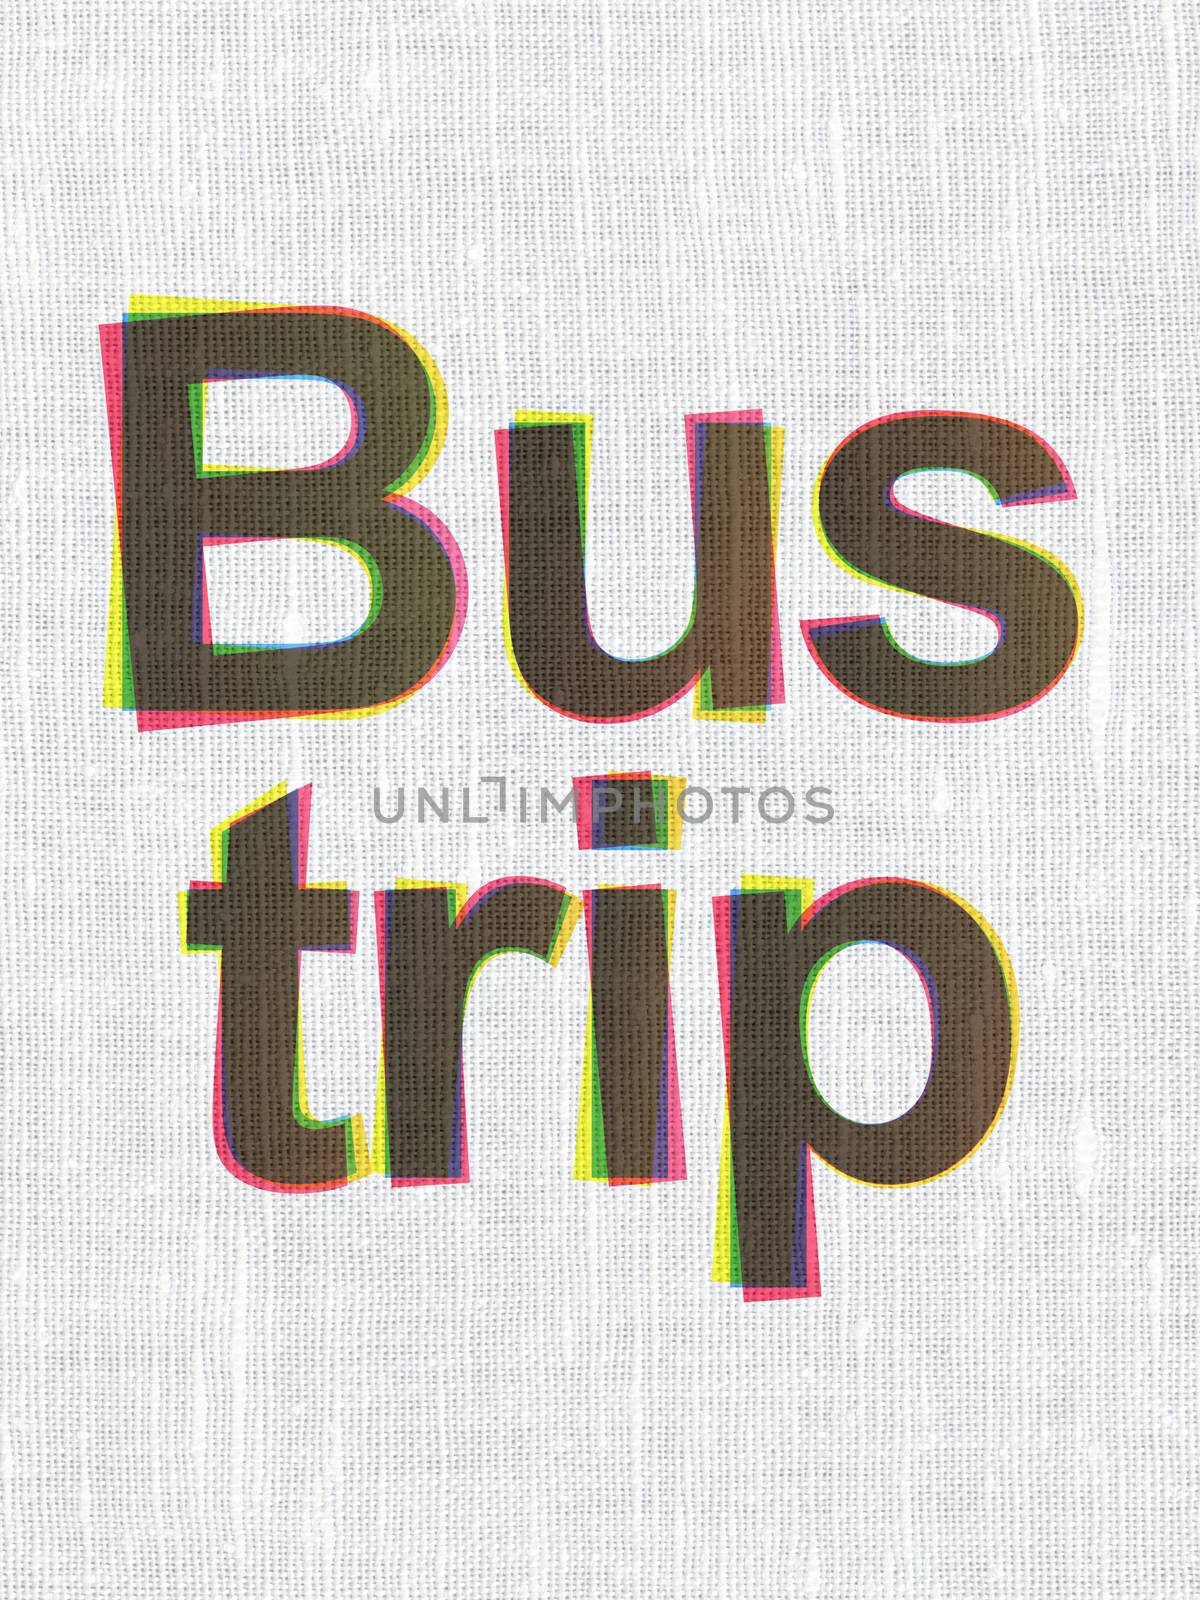 Tourism concept: CMYK Bus Trip on linen fabric texture background